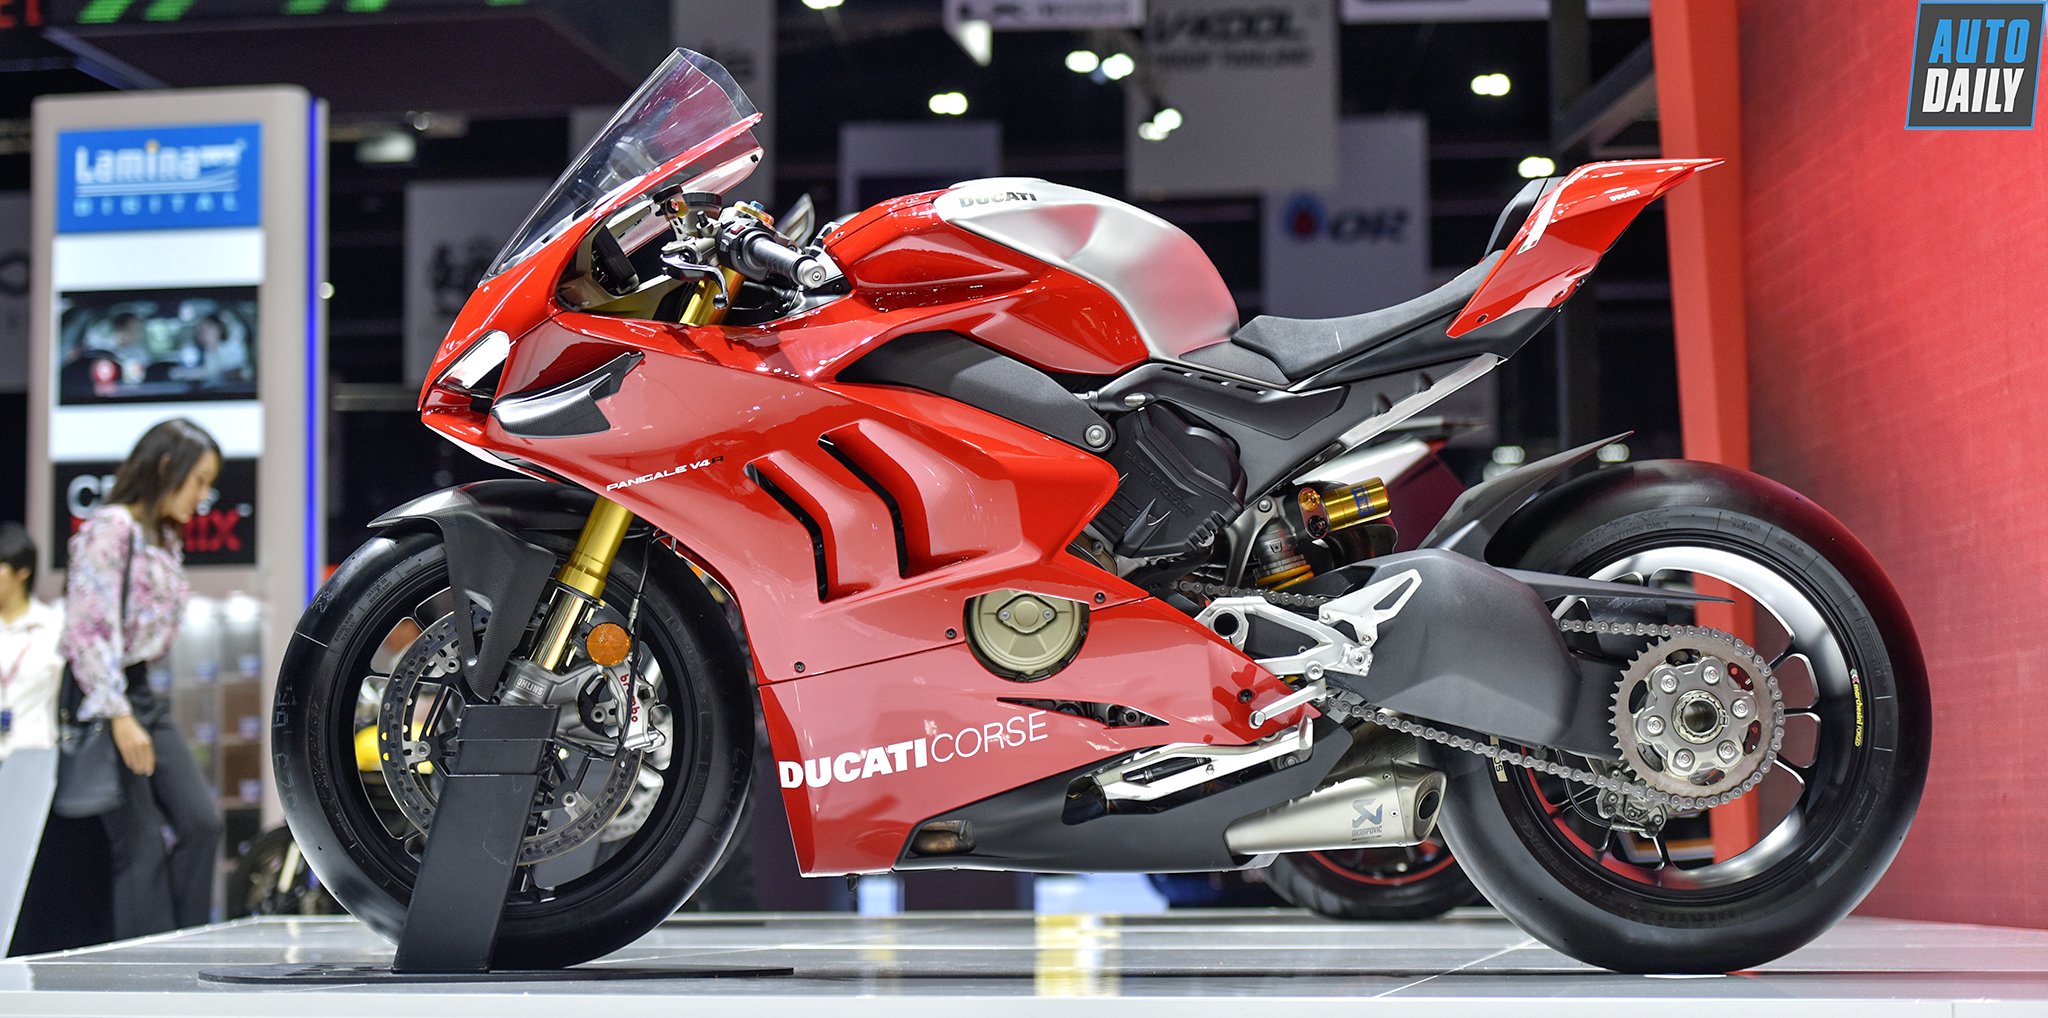 Siêu phẩm Ducati Panigale V4R giá trên 2 tỷ đồng sắp về Việt Nam